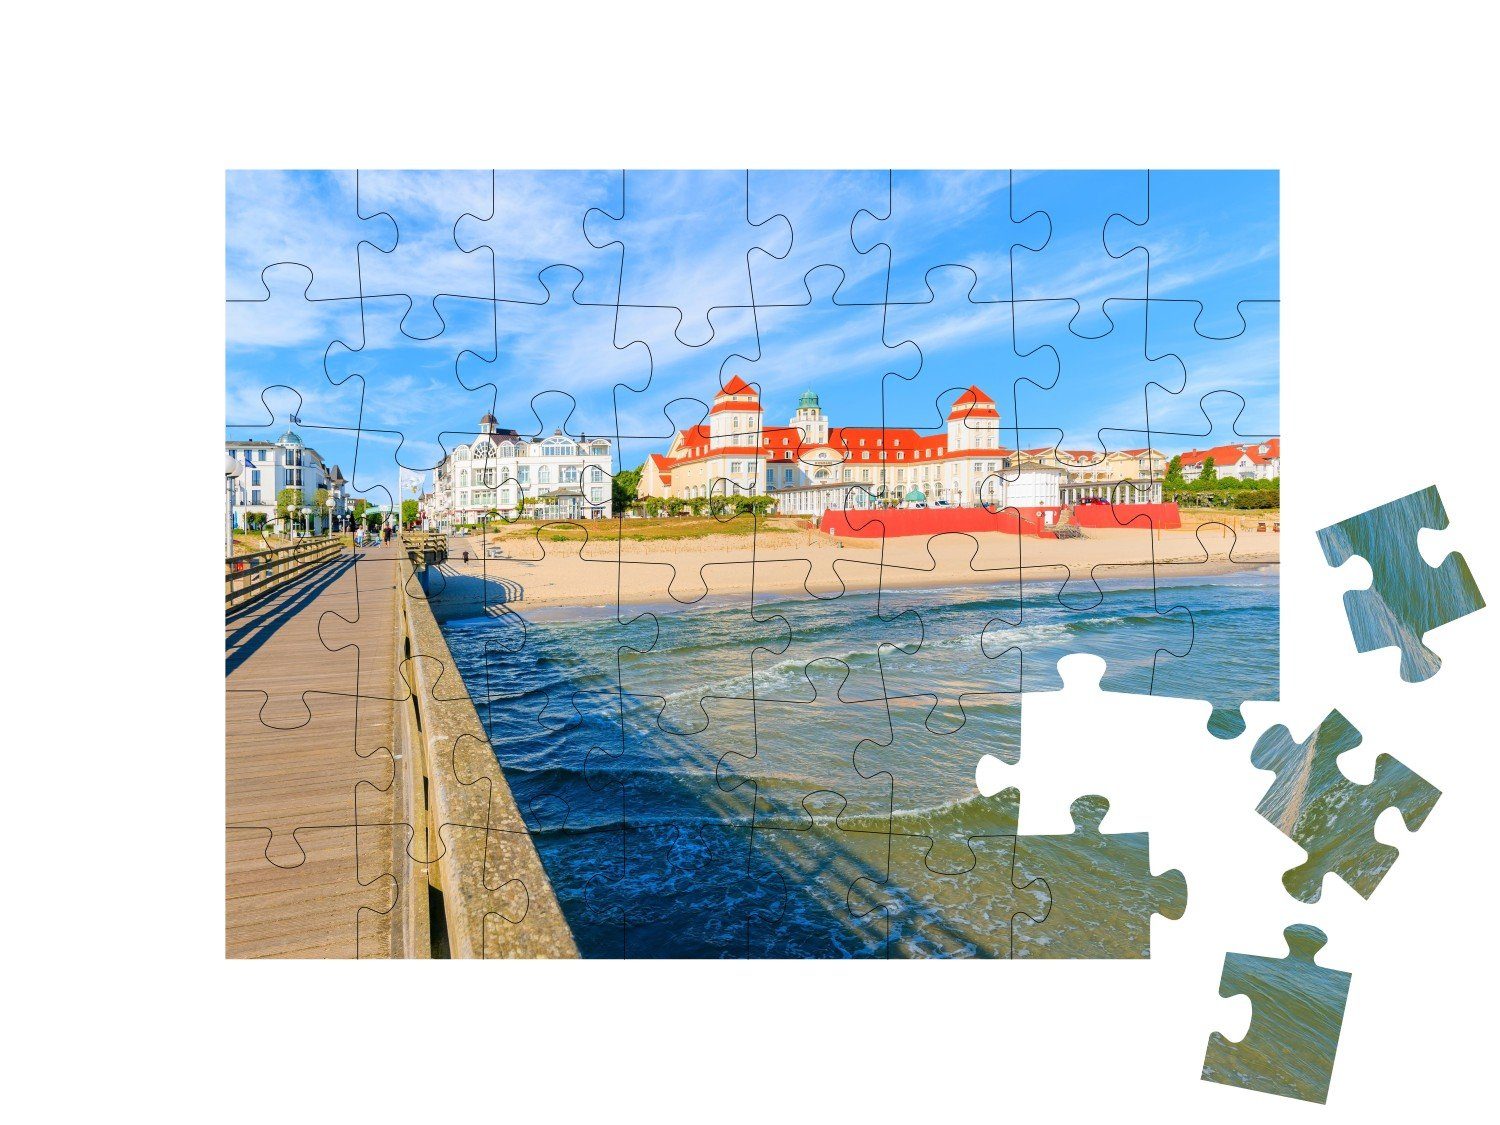 Insel Binz, puzzleYOU-Kollektionen 48 der Puzzle Puzzleteile, in von Seebrücke Rügen, puzzleYOU Blick